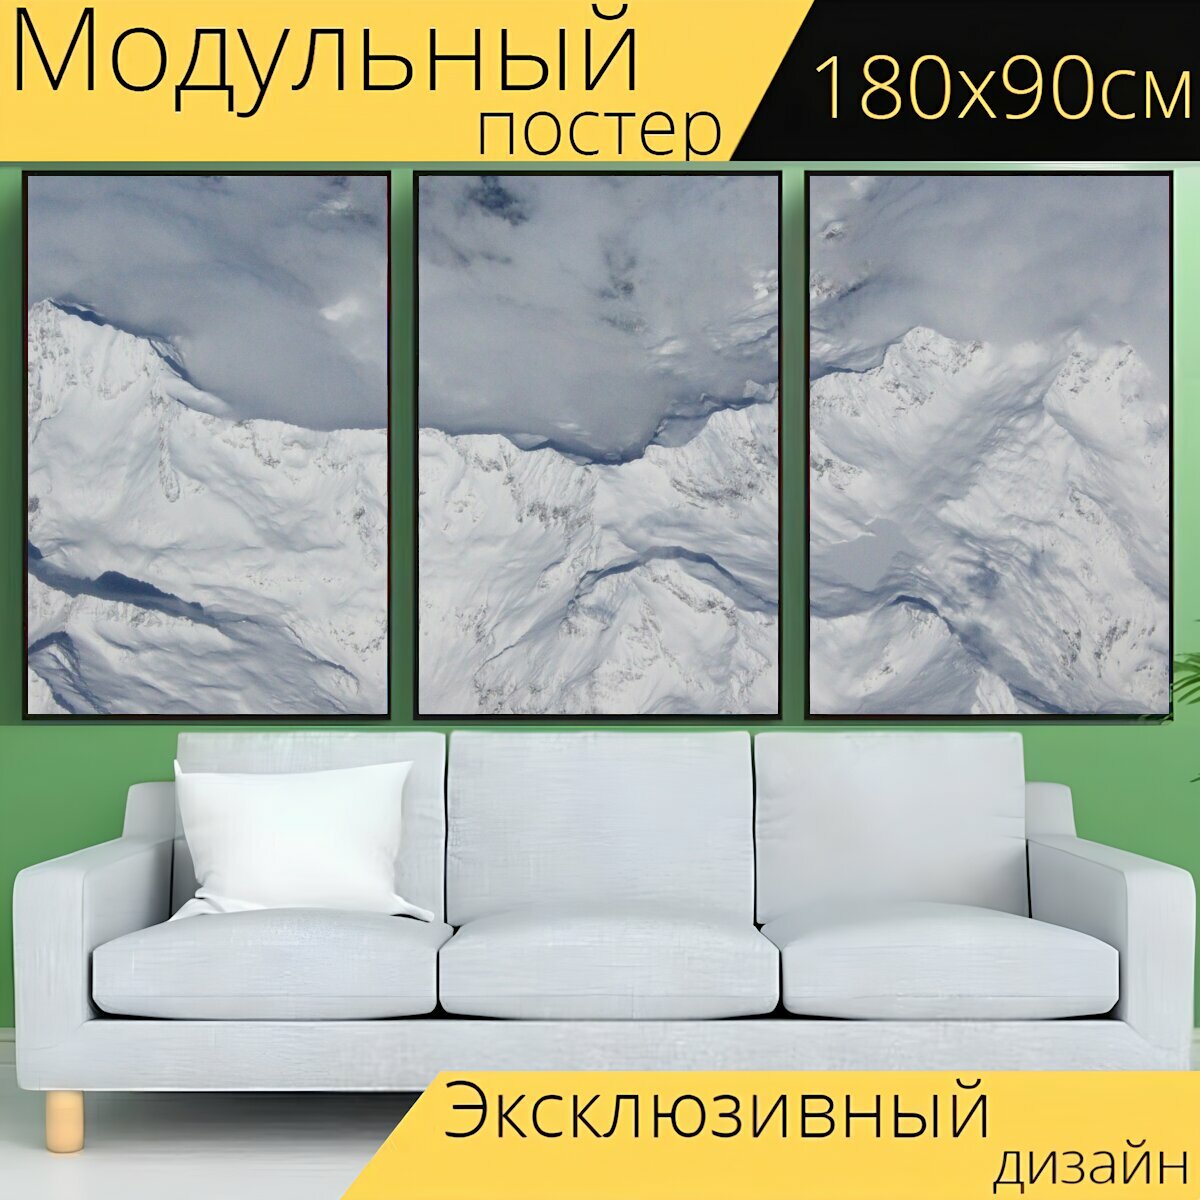 Модульный постер "Горы, облако, снег" 180 x 90 см. для интерьера